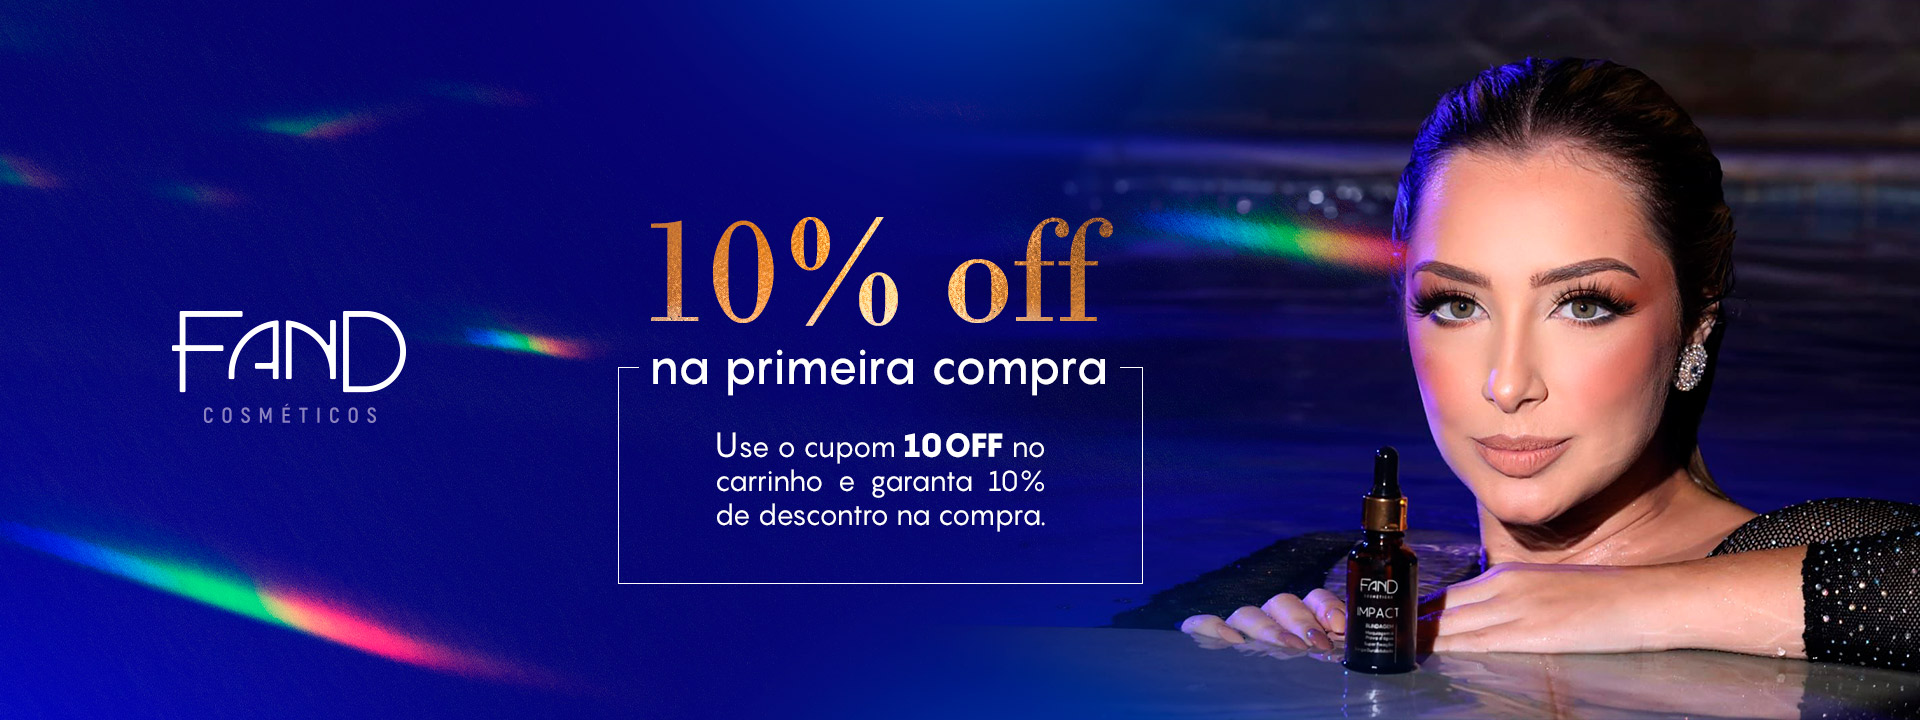 Banner 100% OFF Primeira Compra